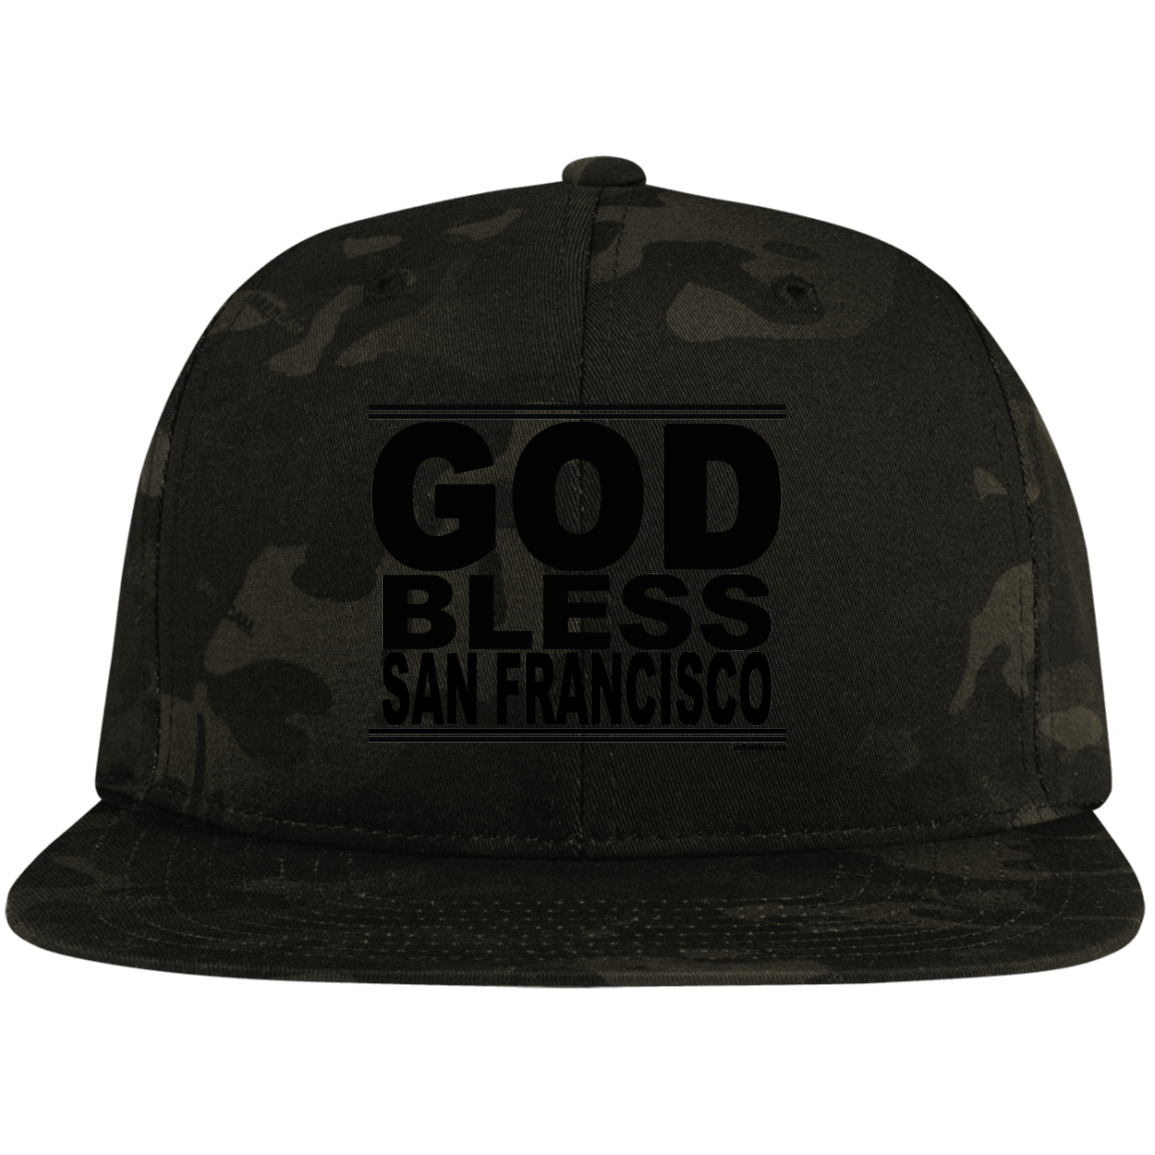 #GodBlessSanFrancisco - Snapback Hat